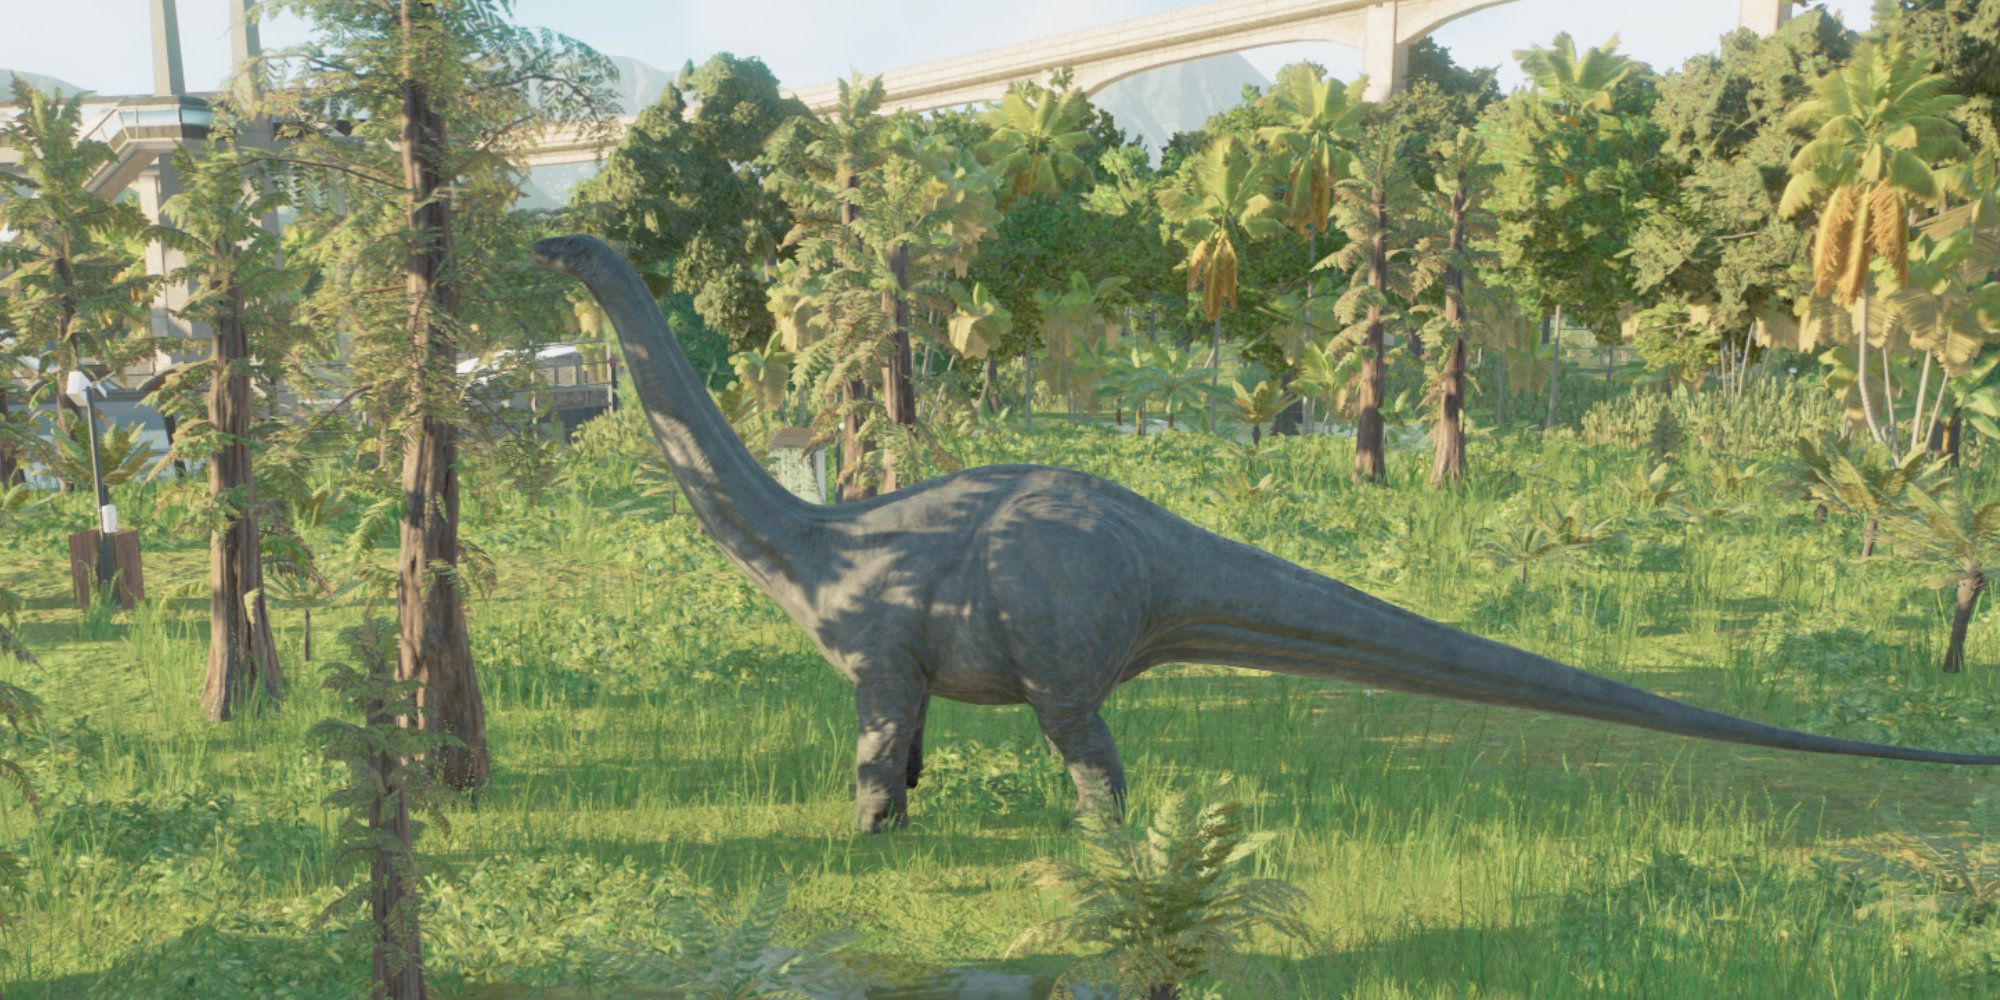 JWE2 dinosaur by a ranger post